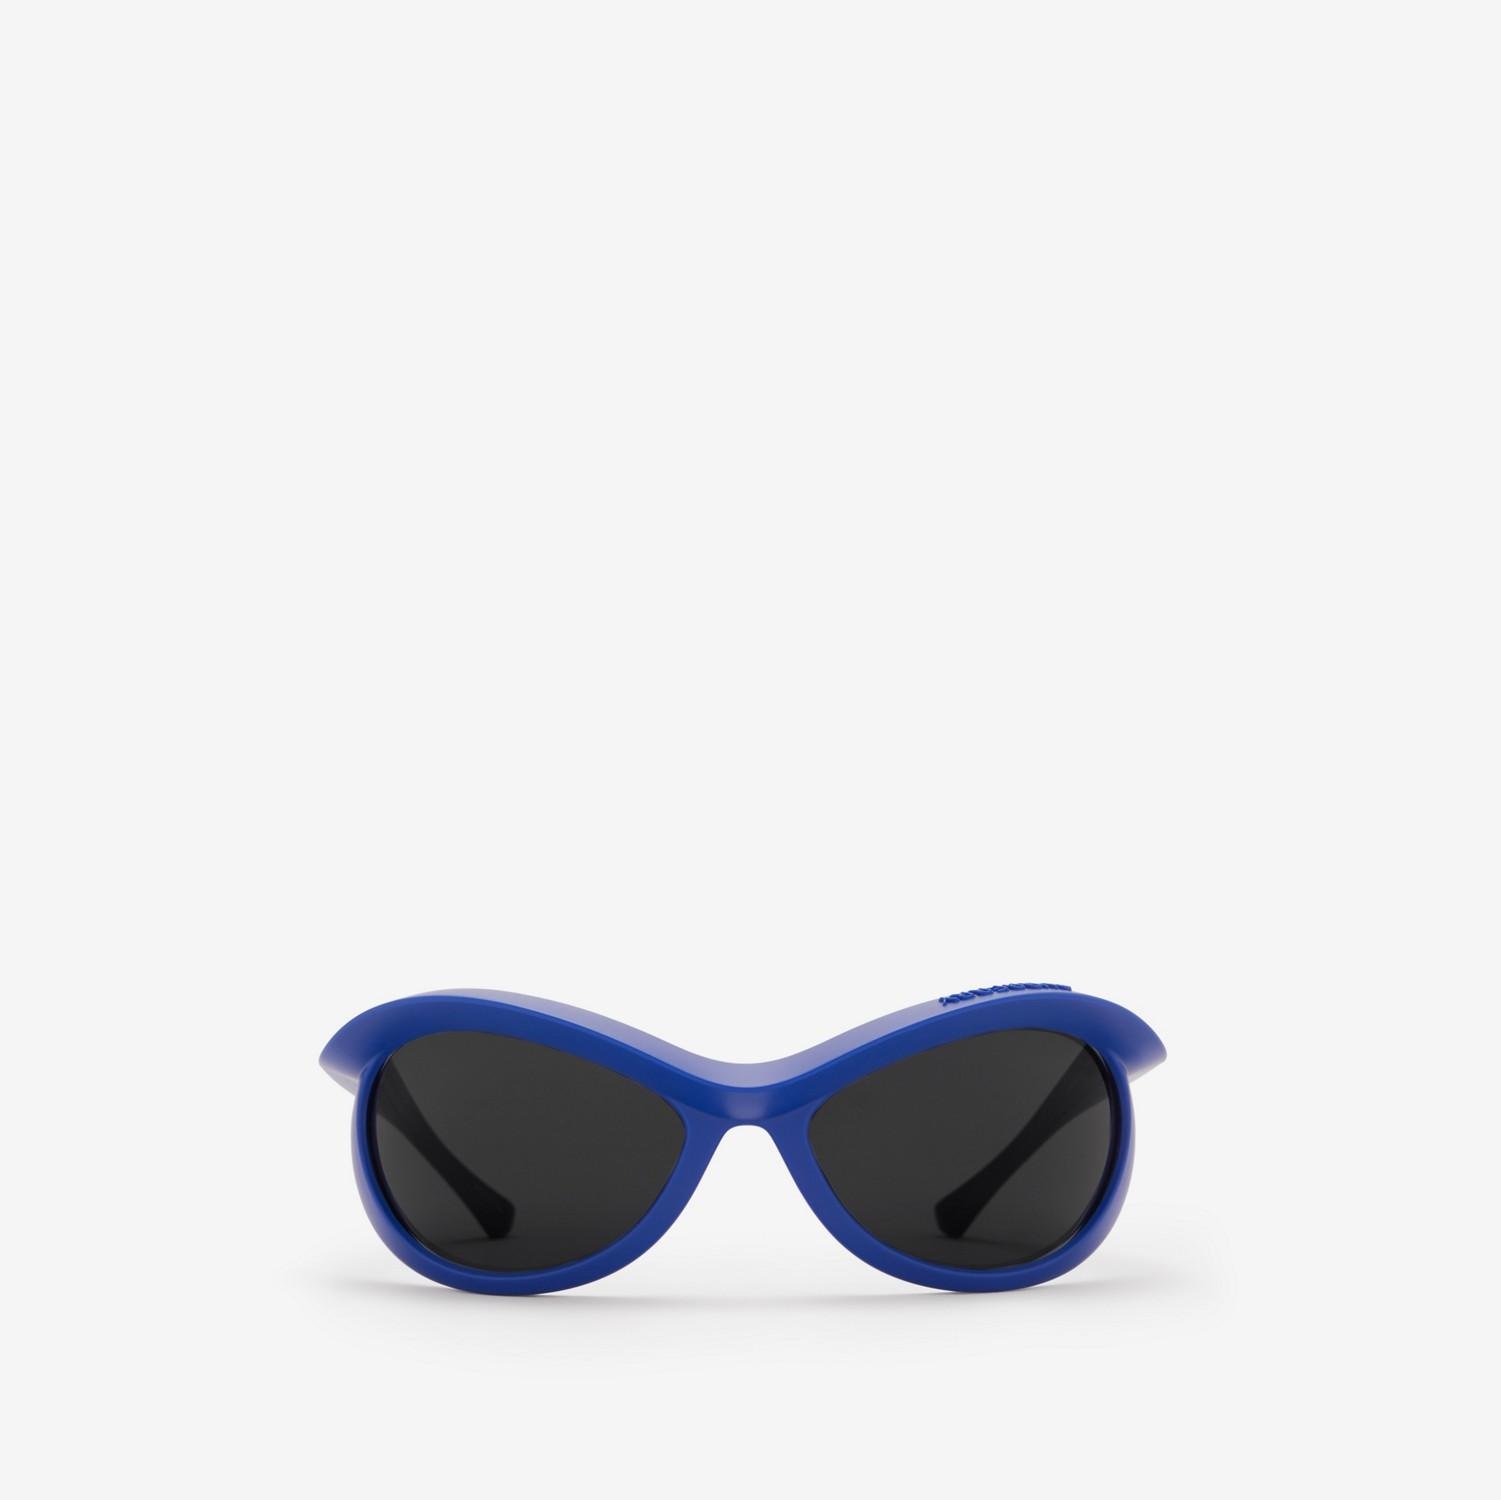 Blinker Sunglasses by BURBERRY